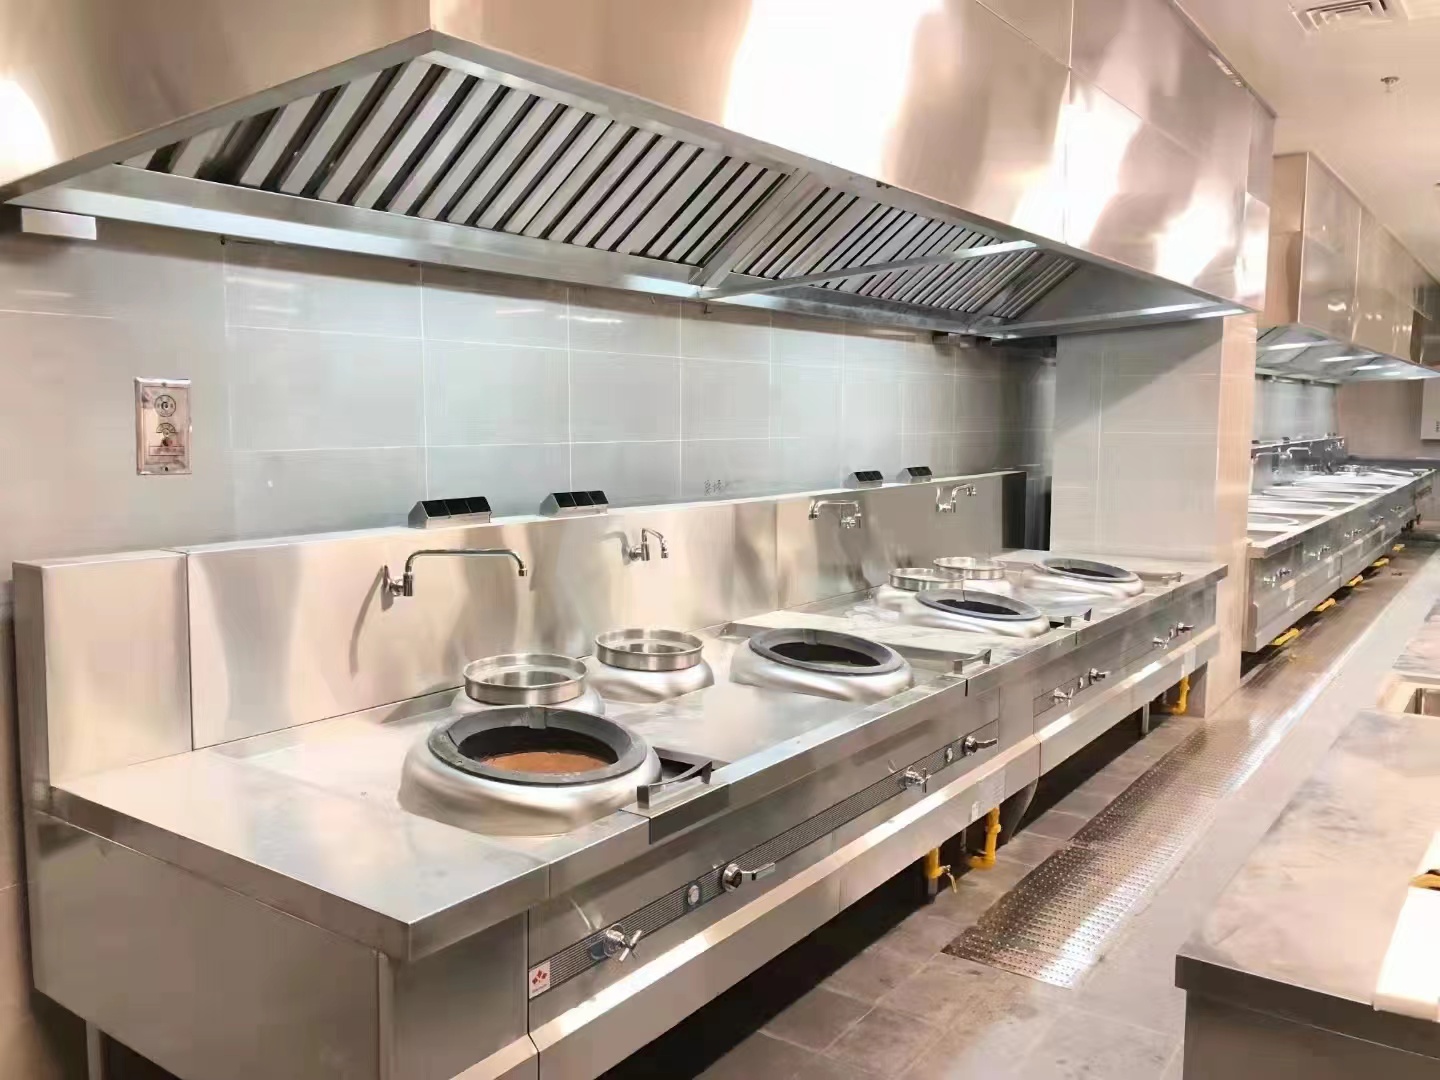 西式粤菜餐饮厨房设备工程设计有哪些基本功能区及厨具设备配置情况?